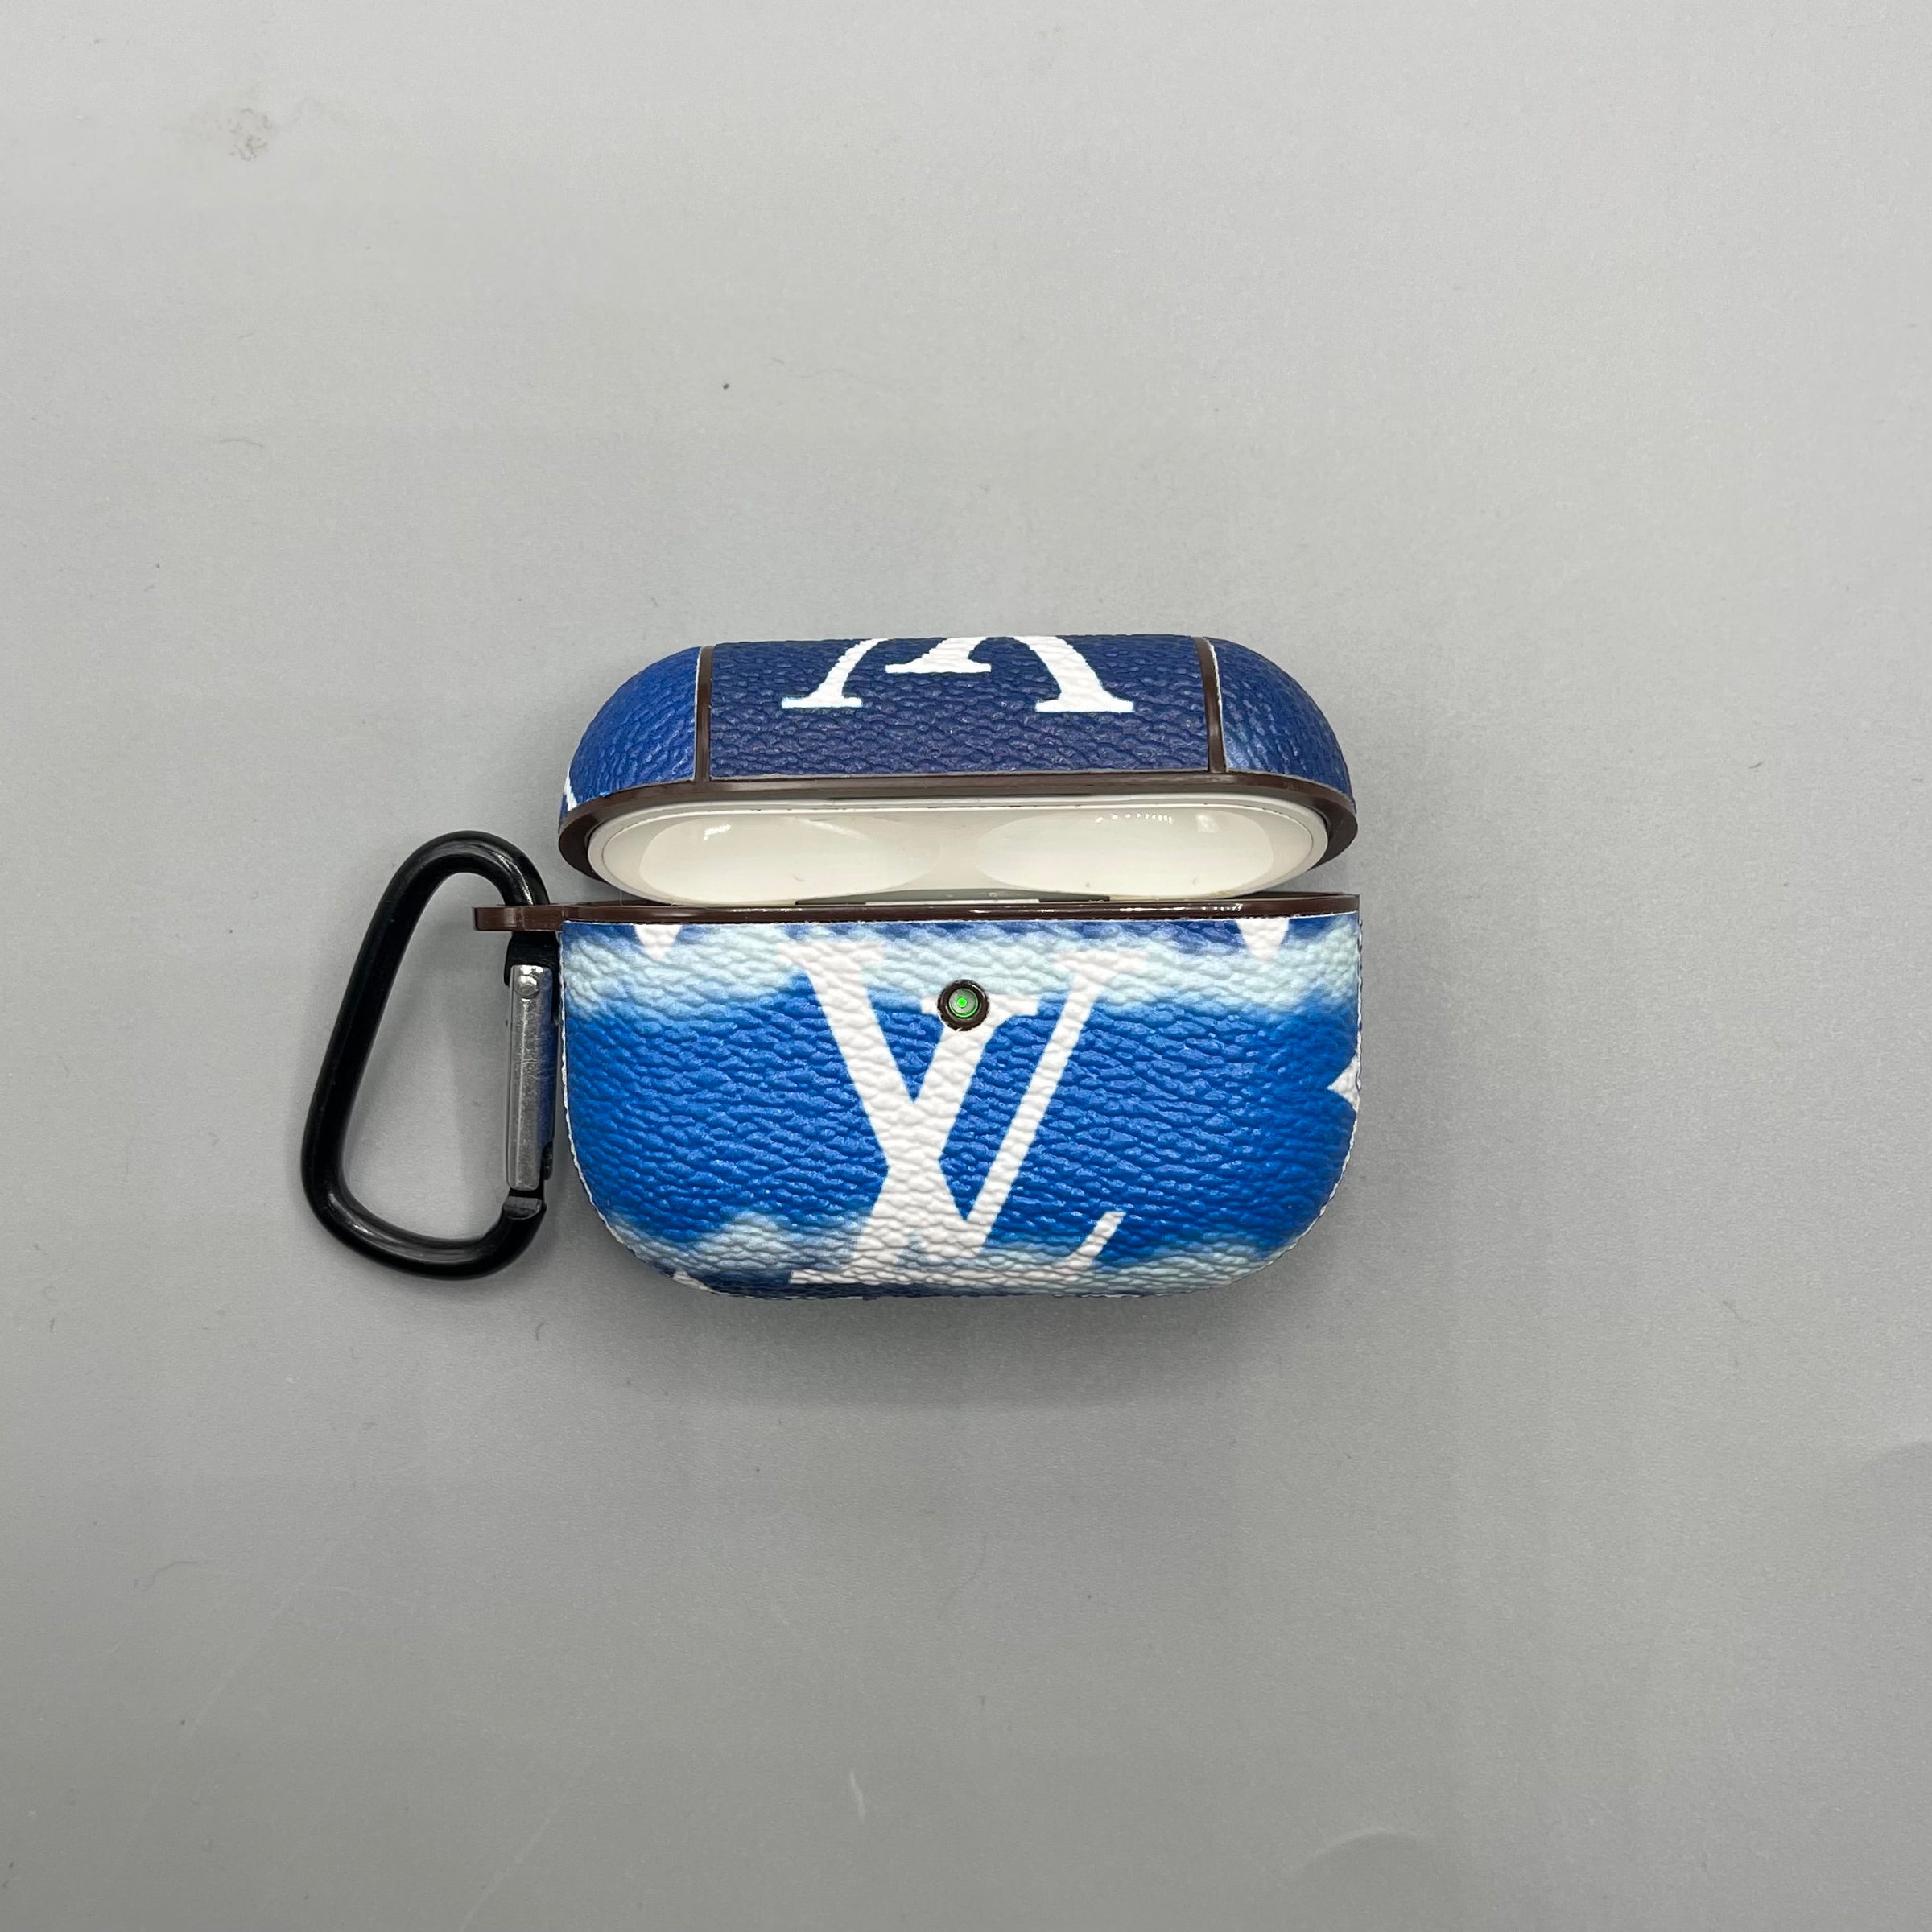 Airpods Pro - Louis Vuitton Case